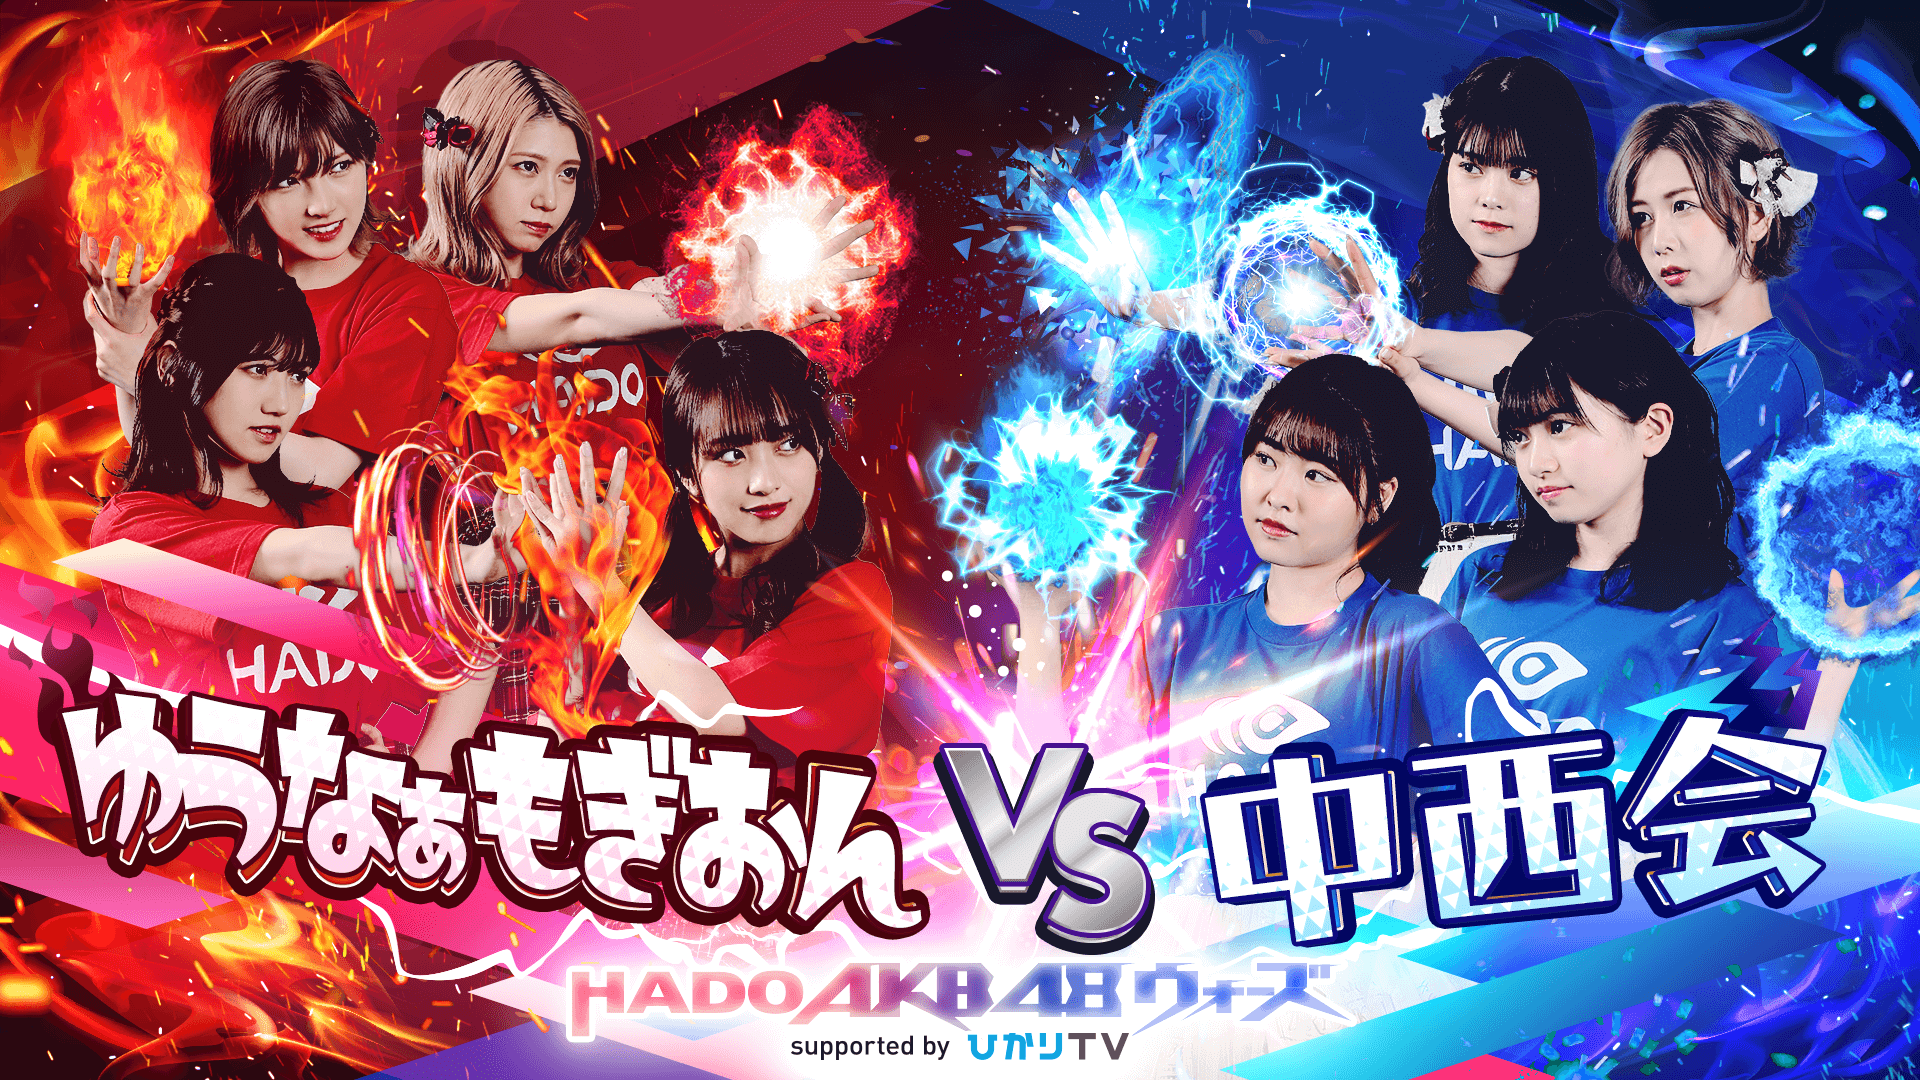 ゆうなぁもぎおん vs 中西会〜HADO AKB48 ウォーズ〜